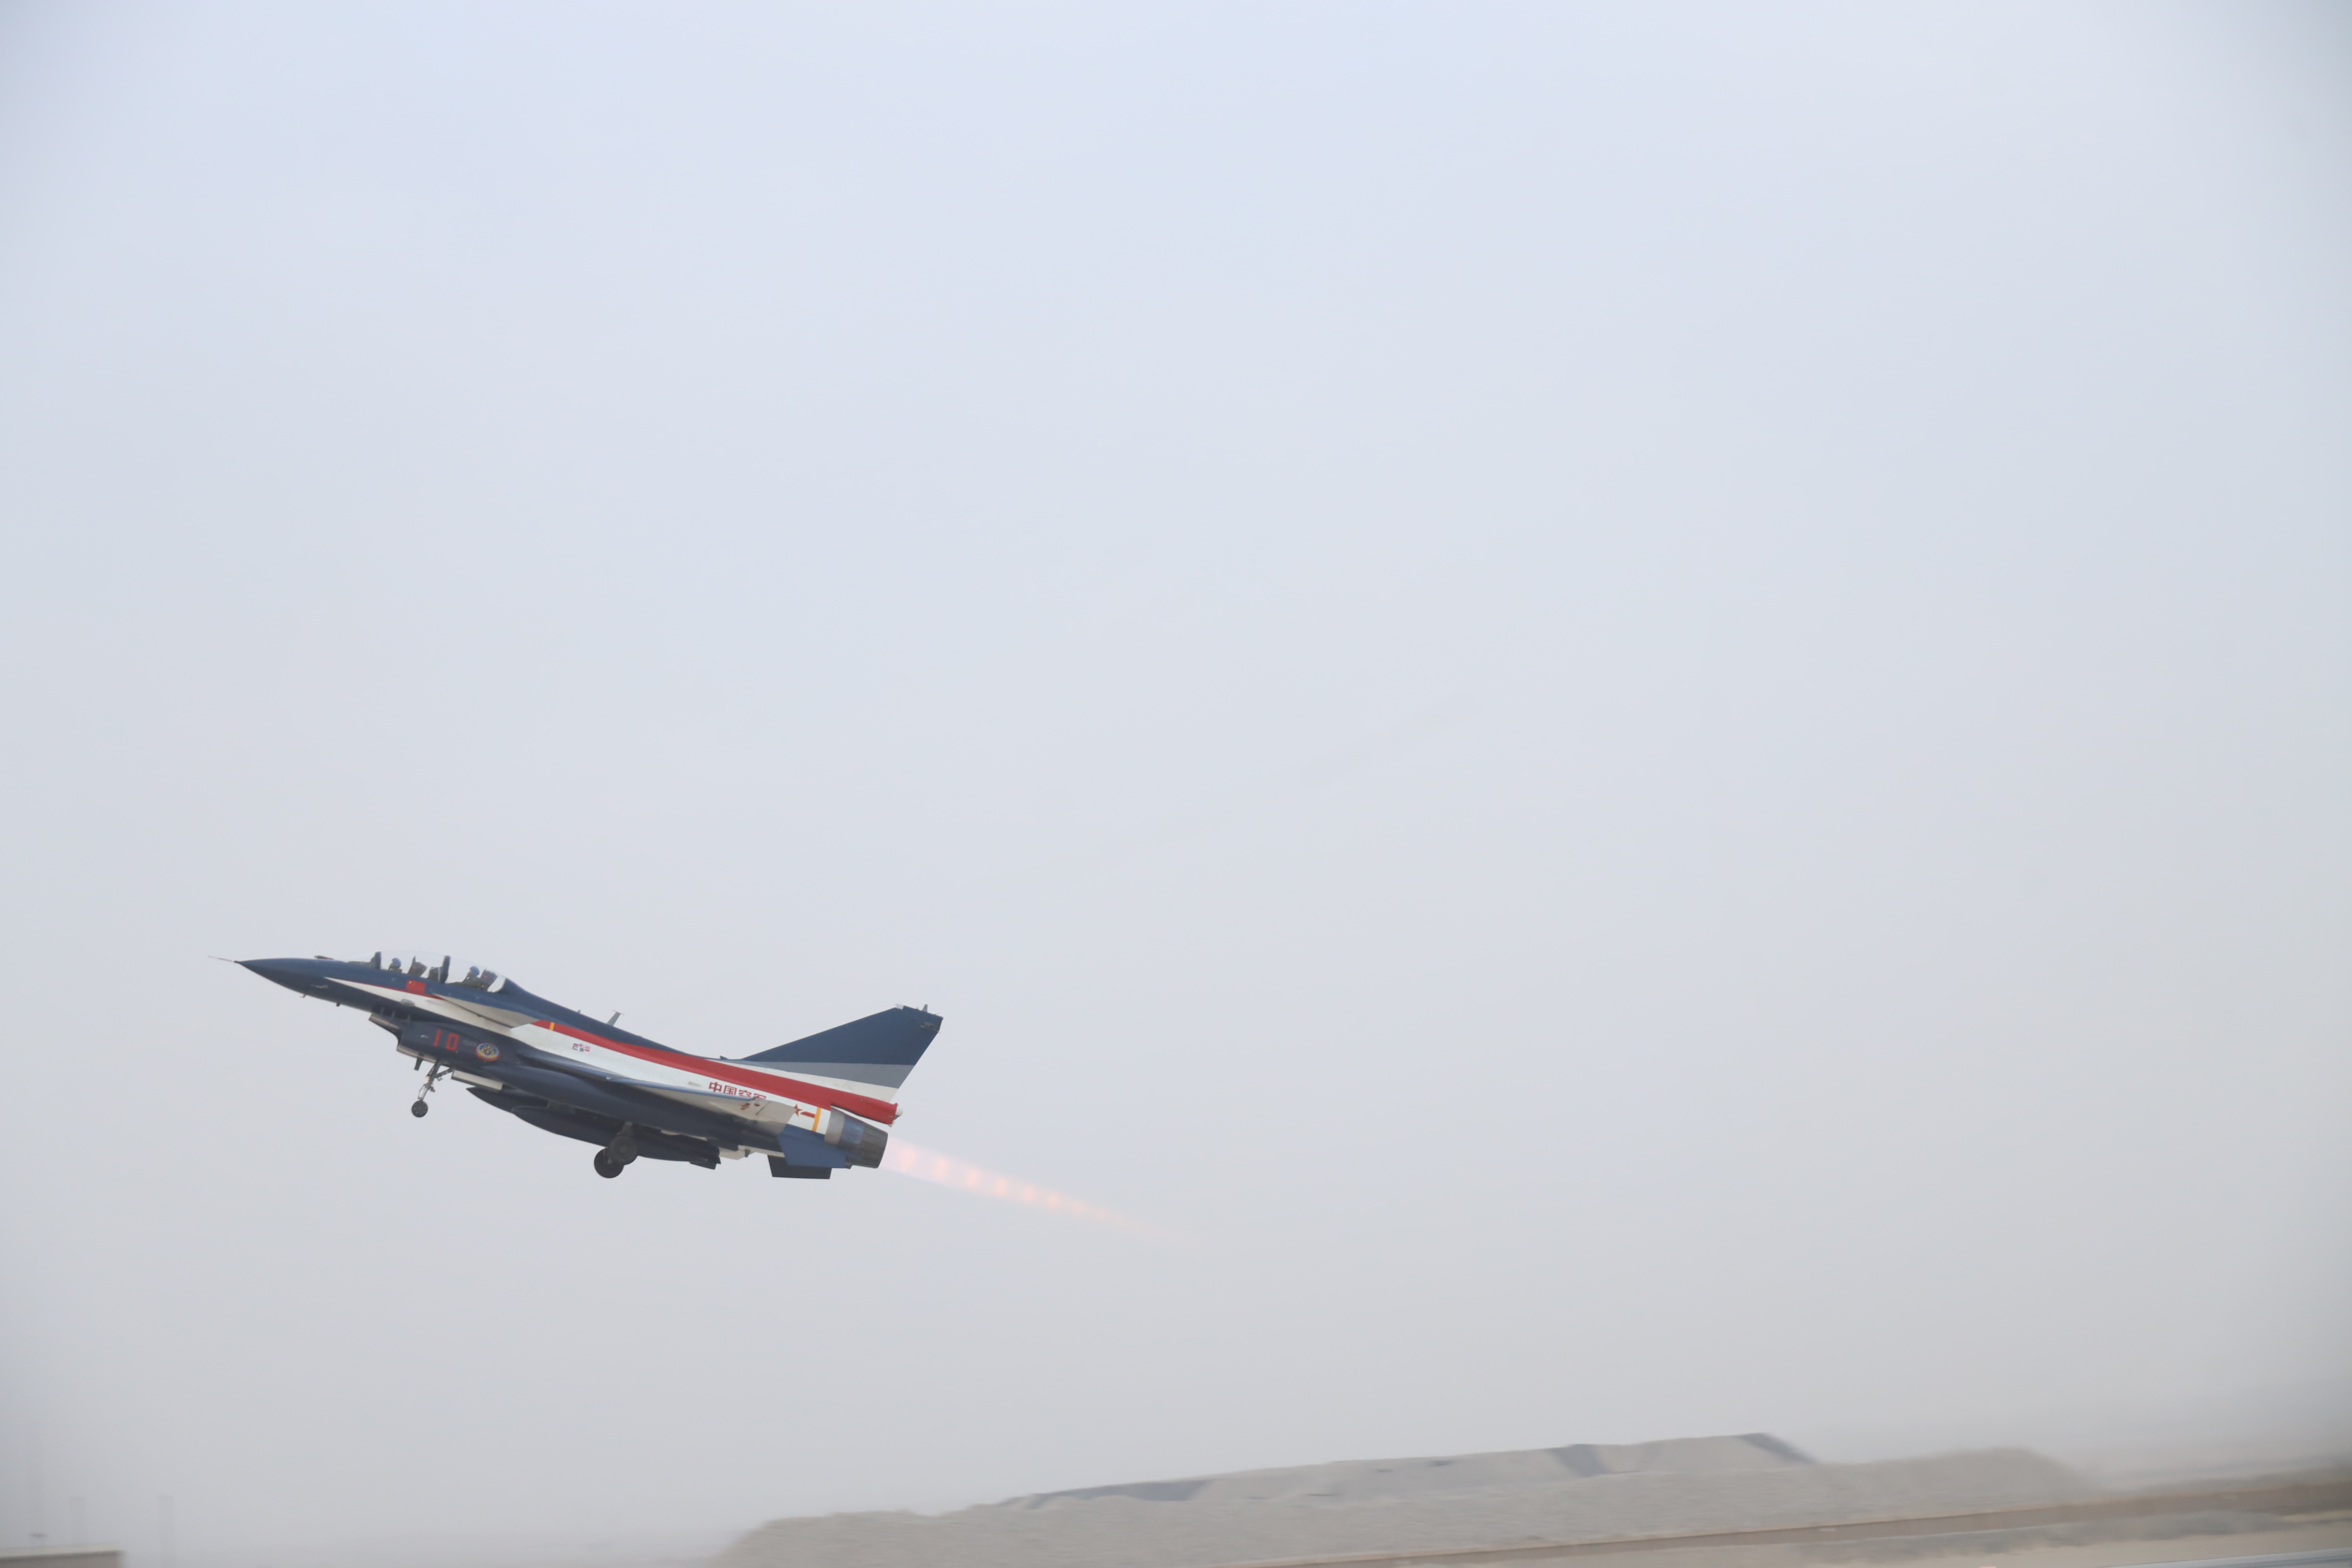 空军八一飞行表演队从西北某机场起飞,应邀参加第二届沙特国际防务展